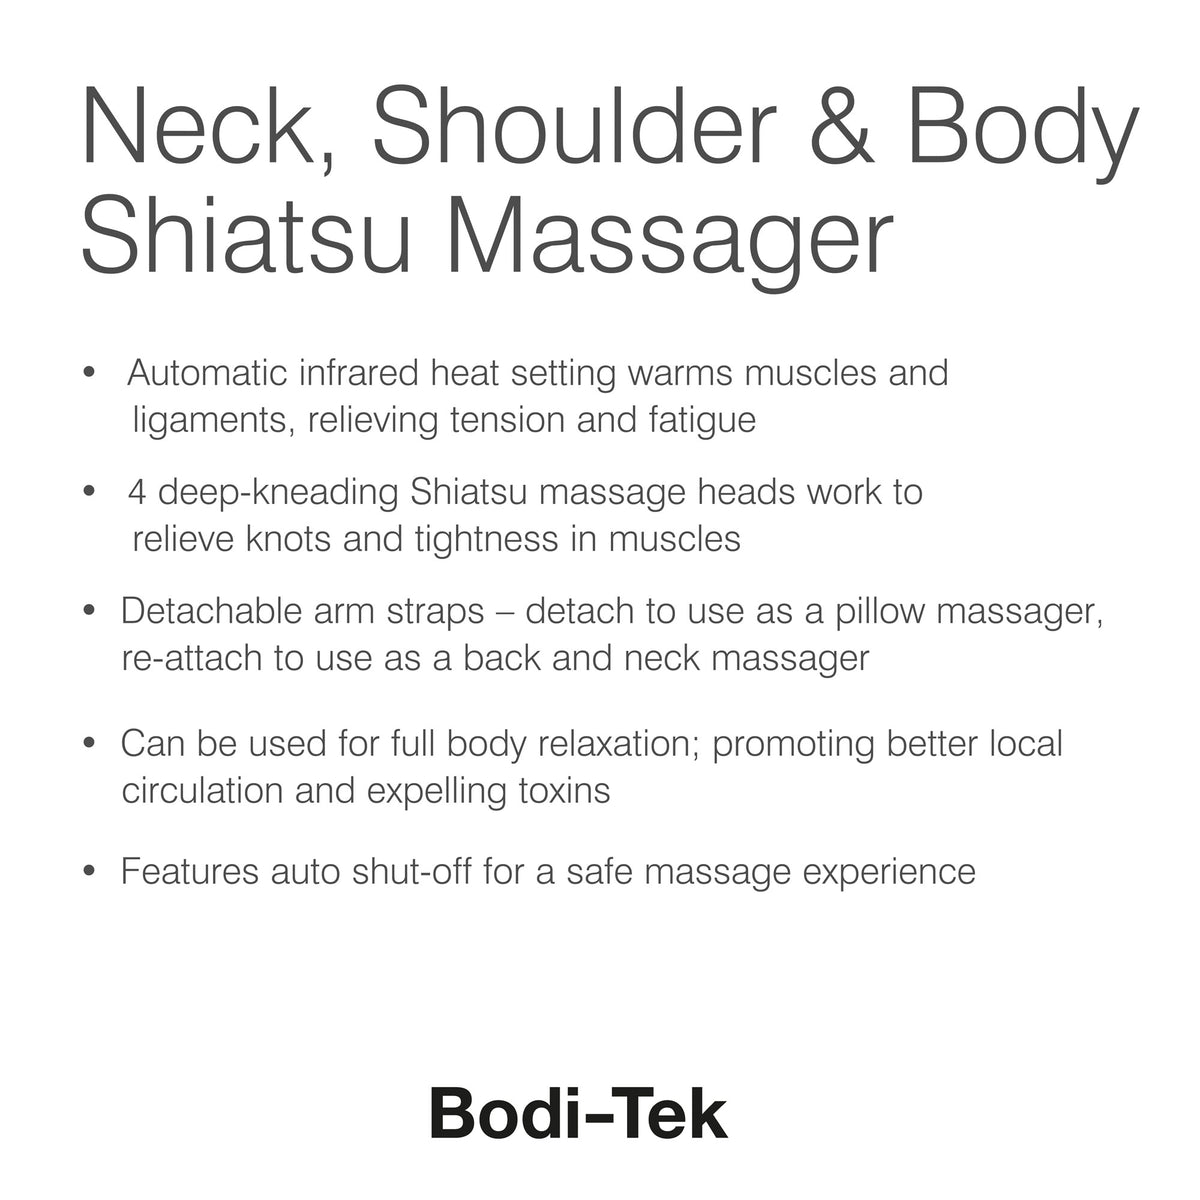 Massaggiatore shiatsu per collo, spalle e corpo - Bodi-Tek